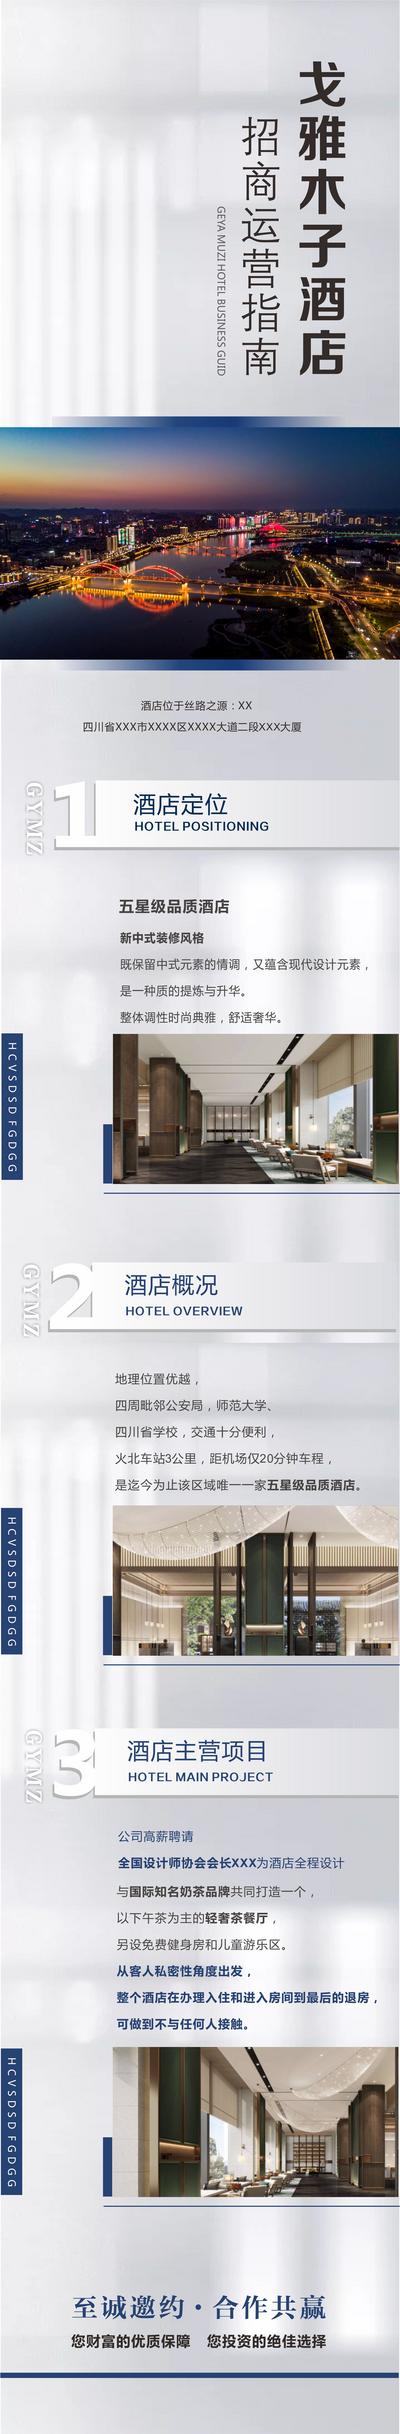 南门网 专题设计 长图 房地产 酒店 招商 运营 简介